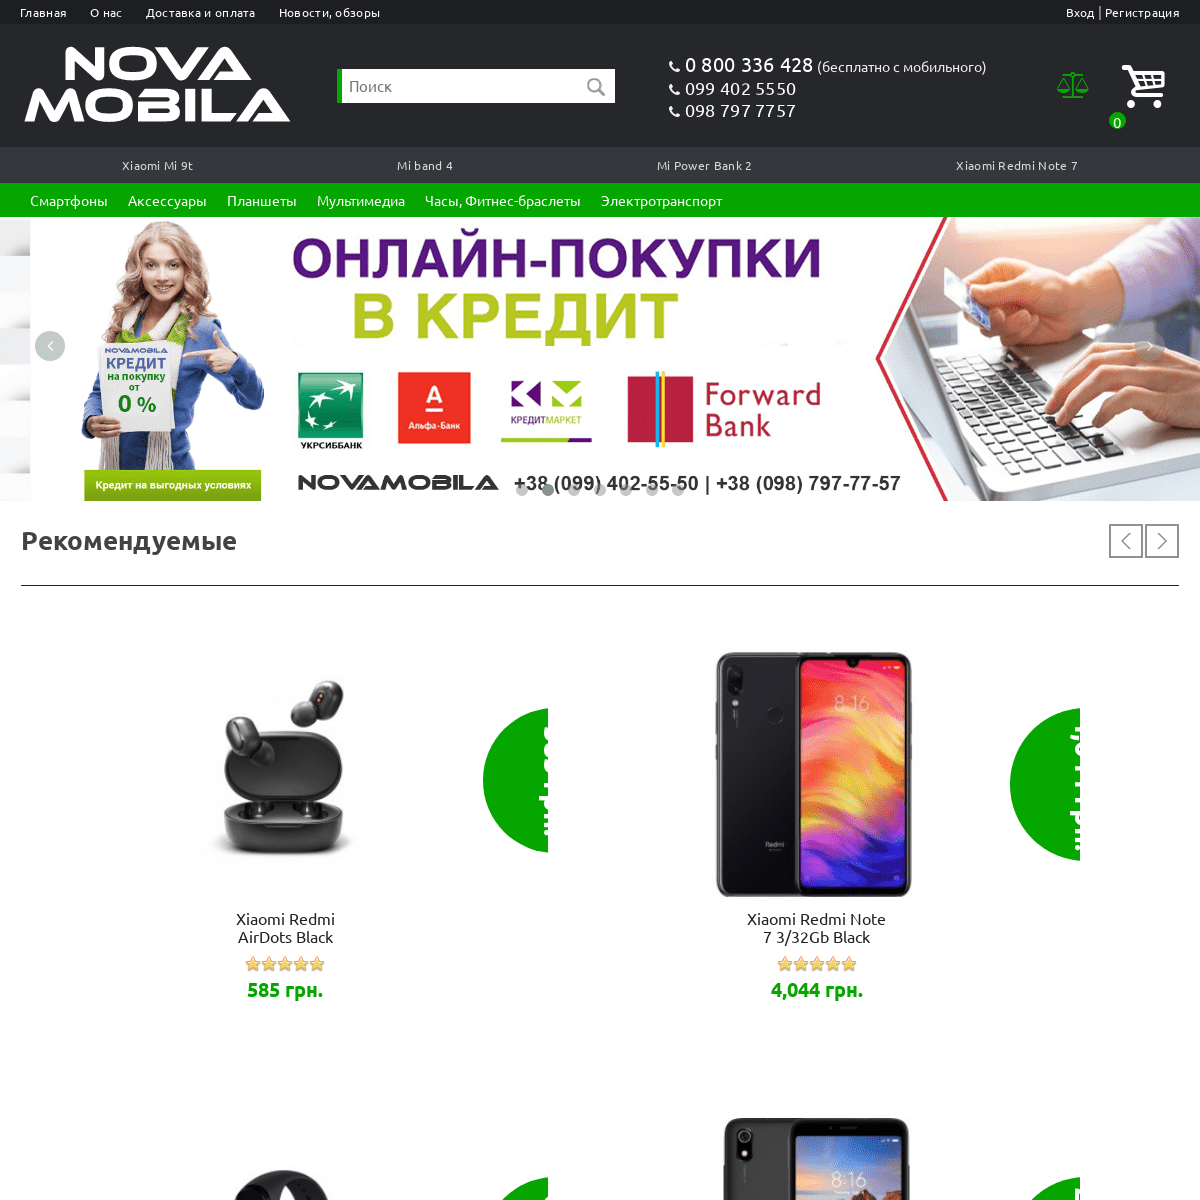 A complete backup of novamobila.com